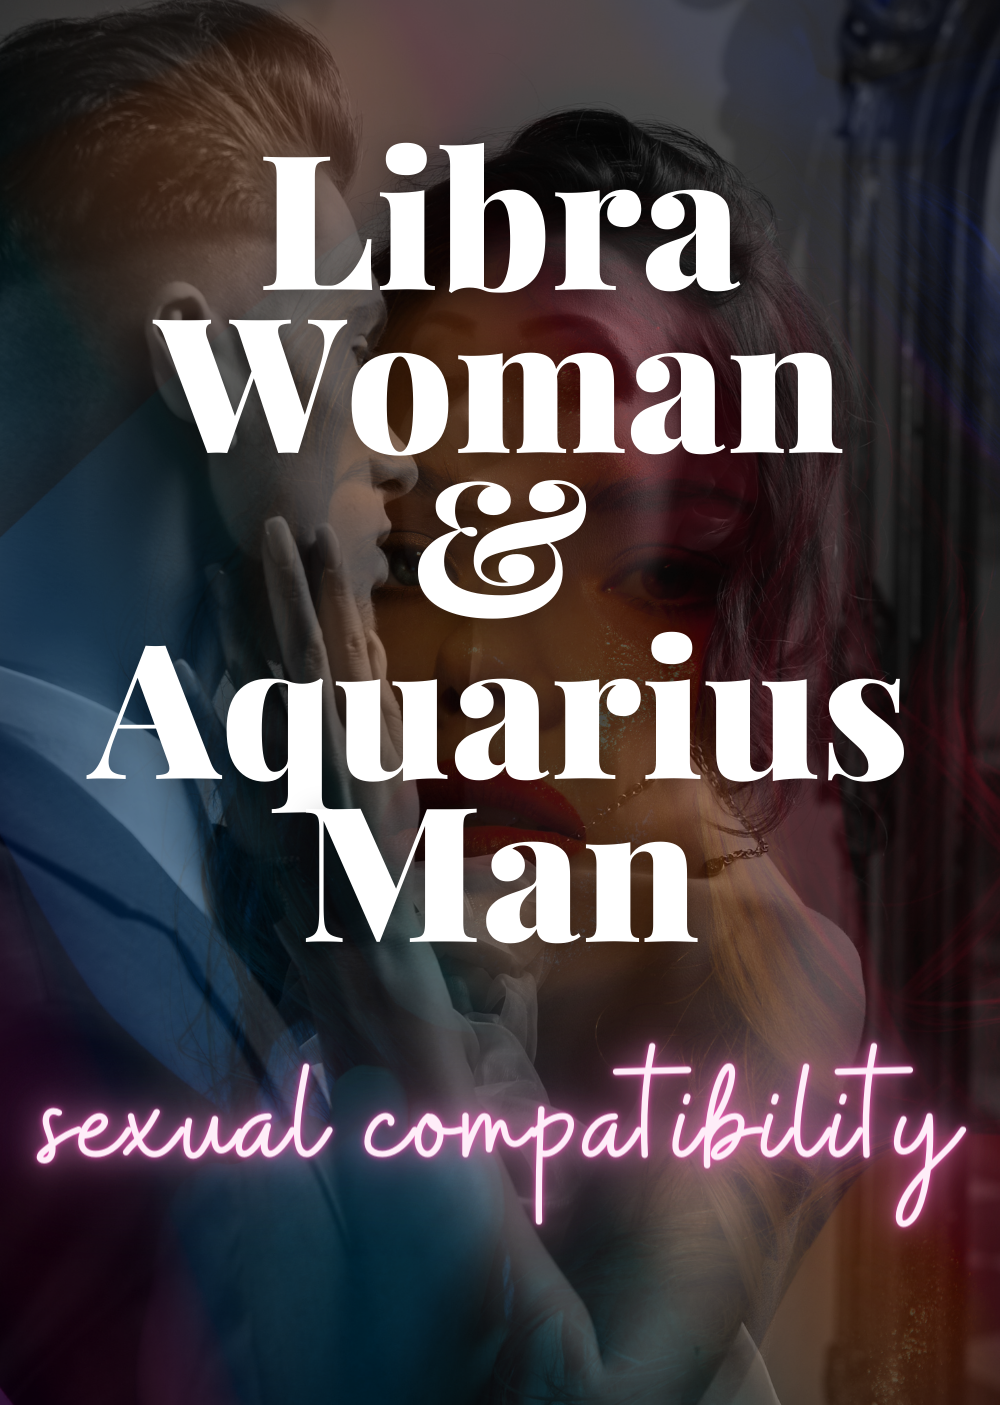 libra woman aquarius man sexual